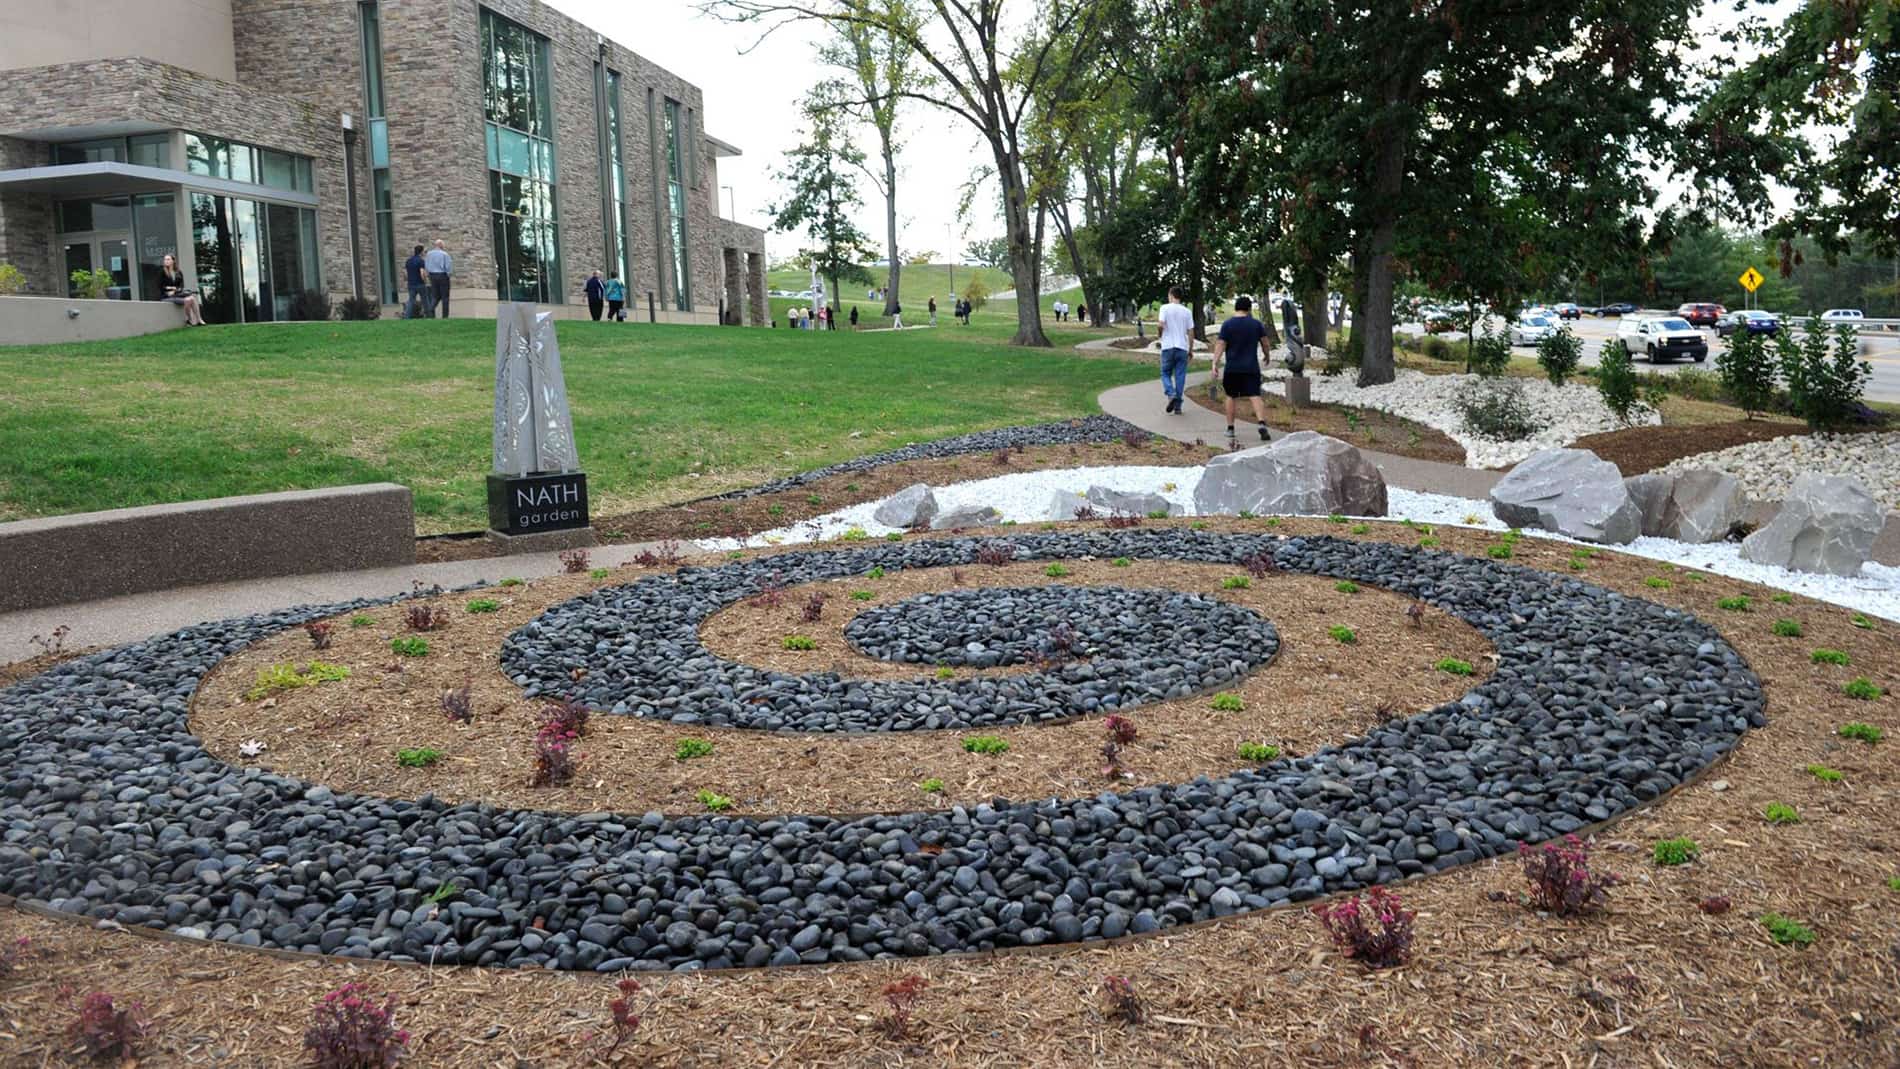 Ashley Kyber, Nath Sculpture Garden